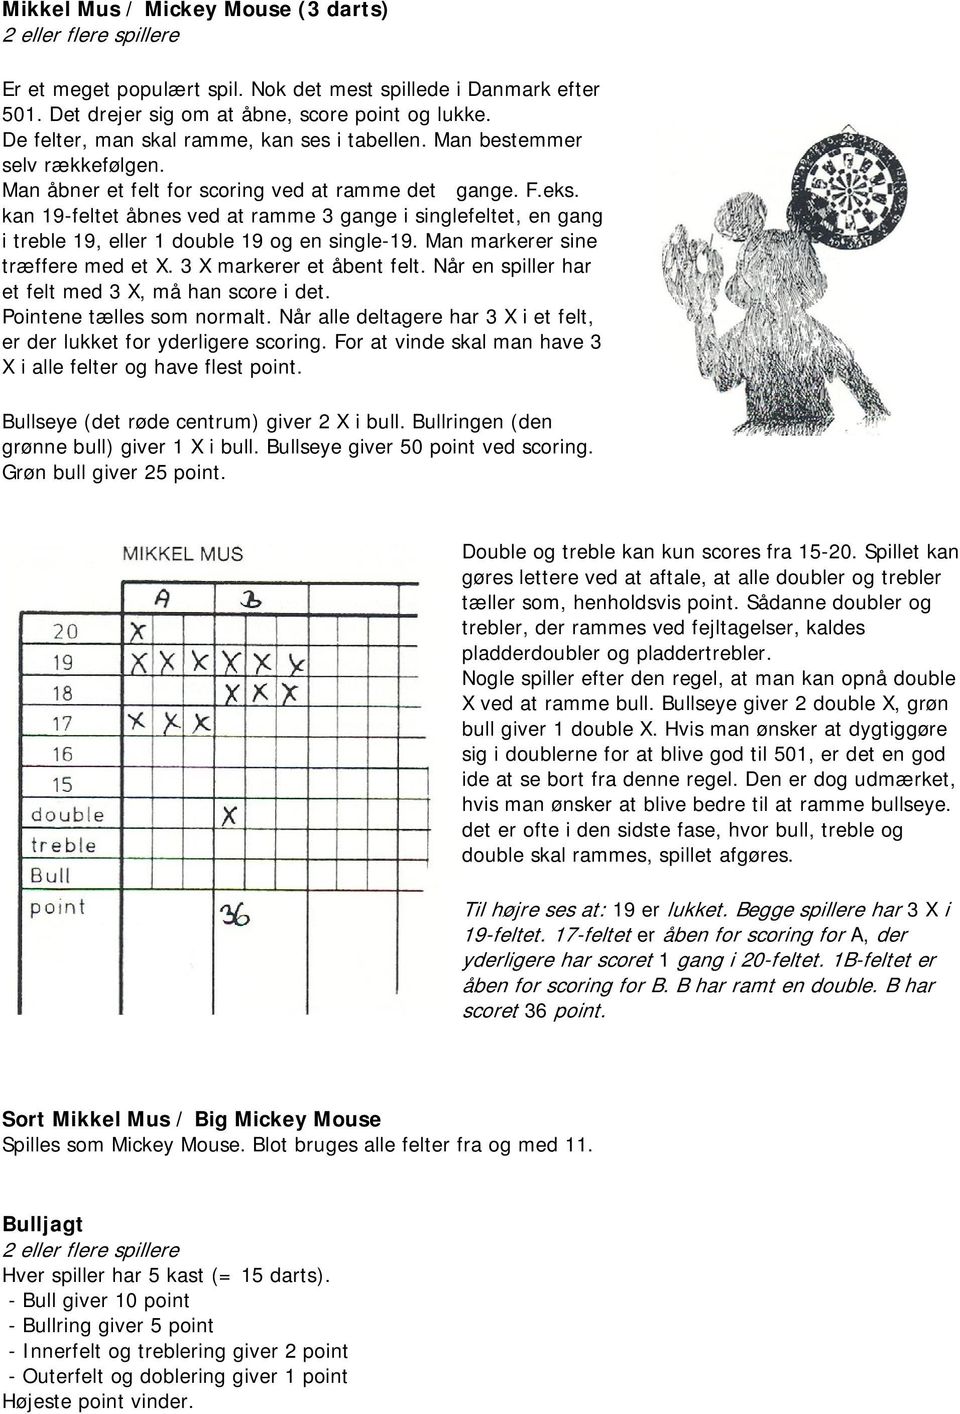 DARTREGLER. Ikke alle darts scorer - PDF Free Download